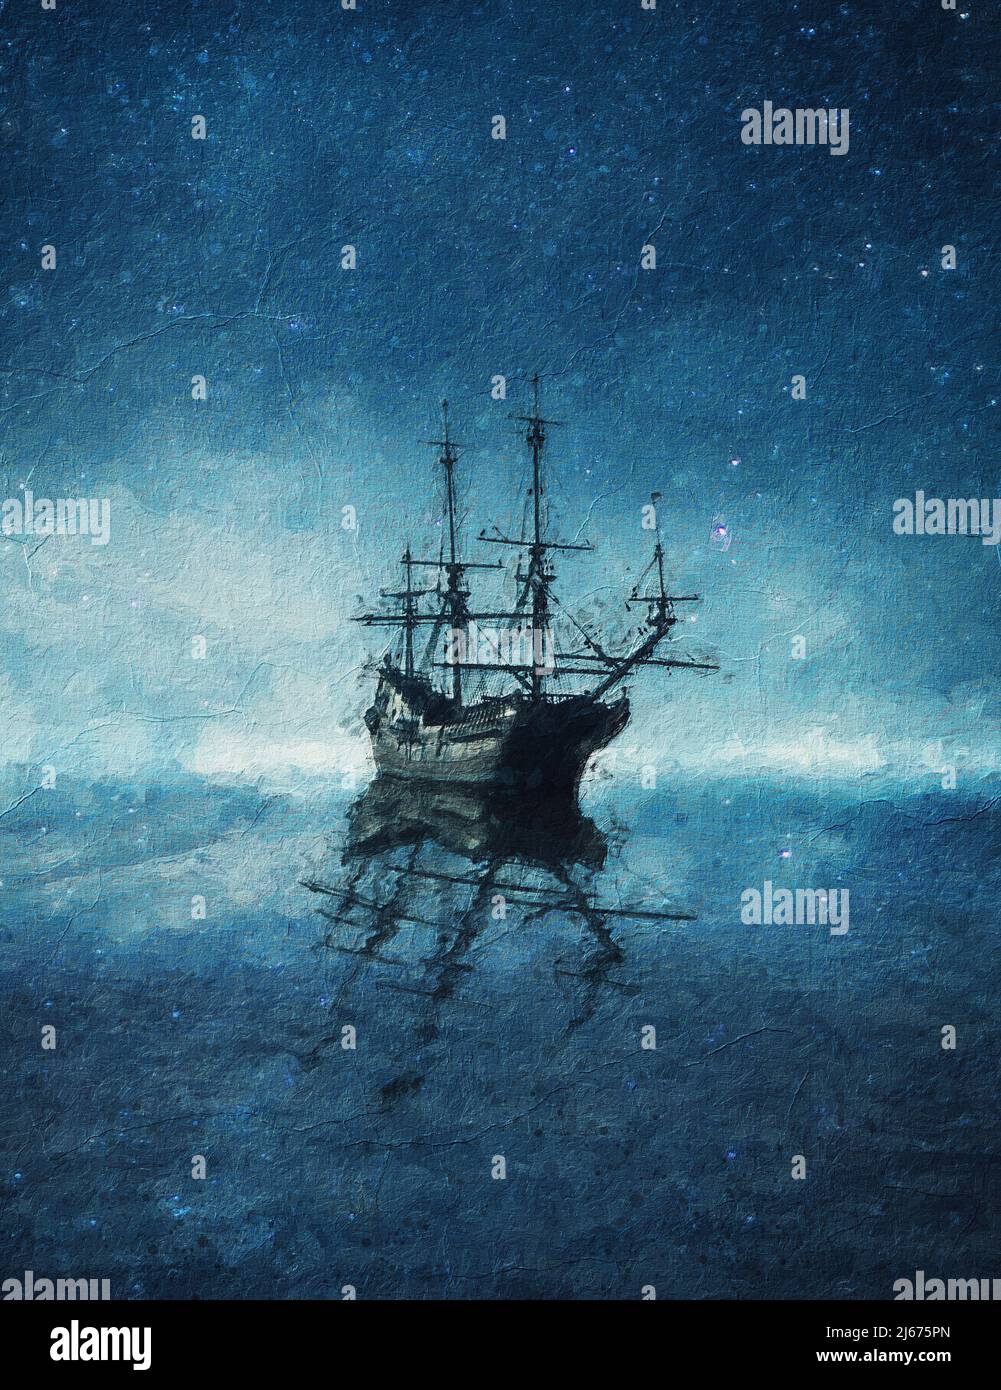 Belle peinture d'un navire fantôme flottant sur la mer bleue sous le ciel étoilé. Magnifique paysage marin avec un bateau à l'horizon qui se reflète sur le Th Banque D'Images